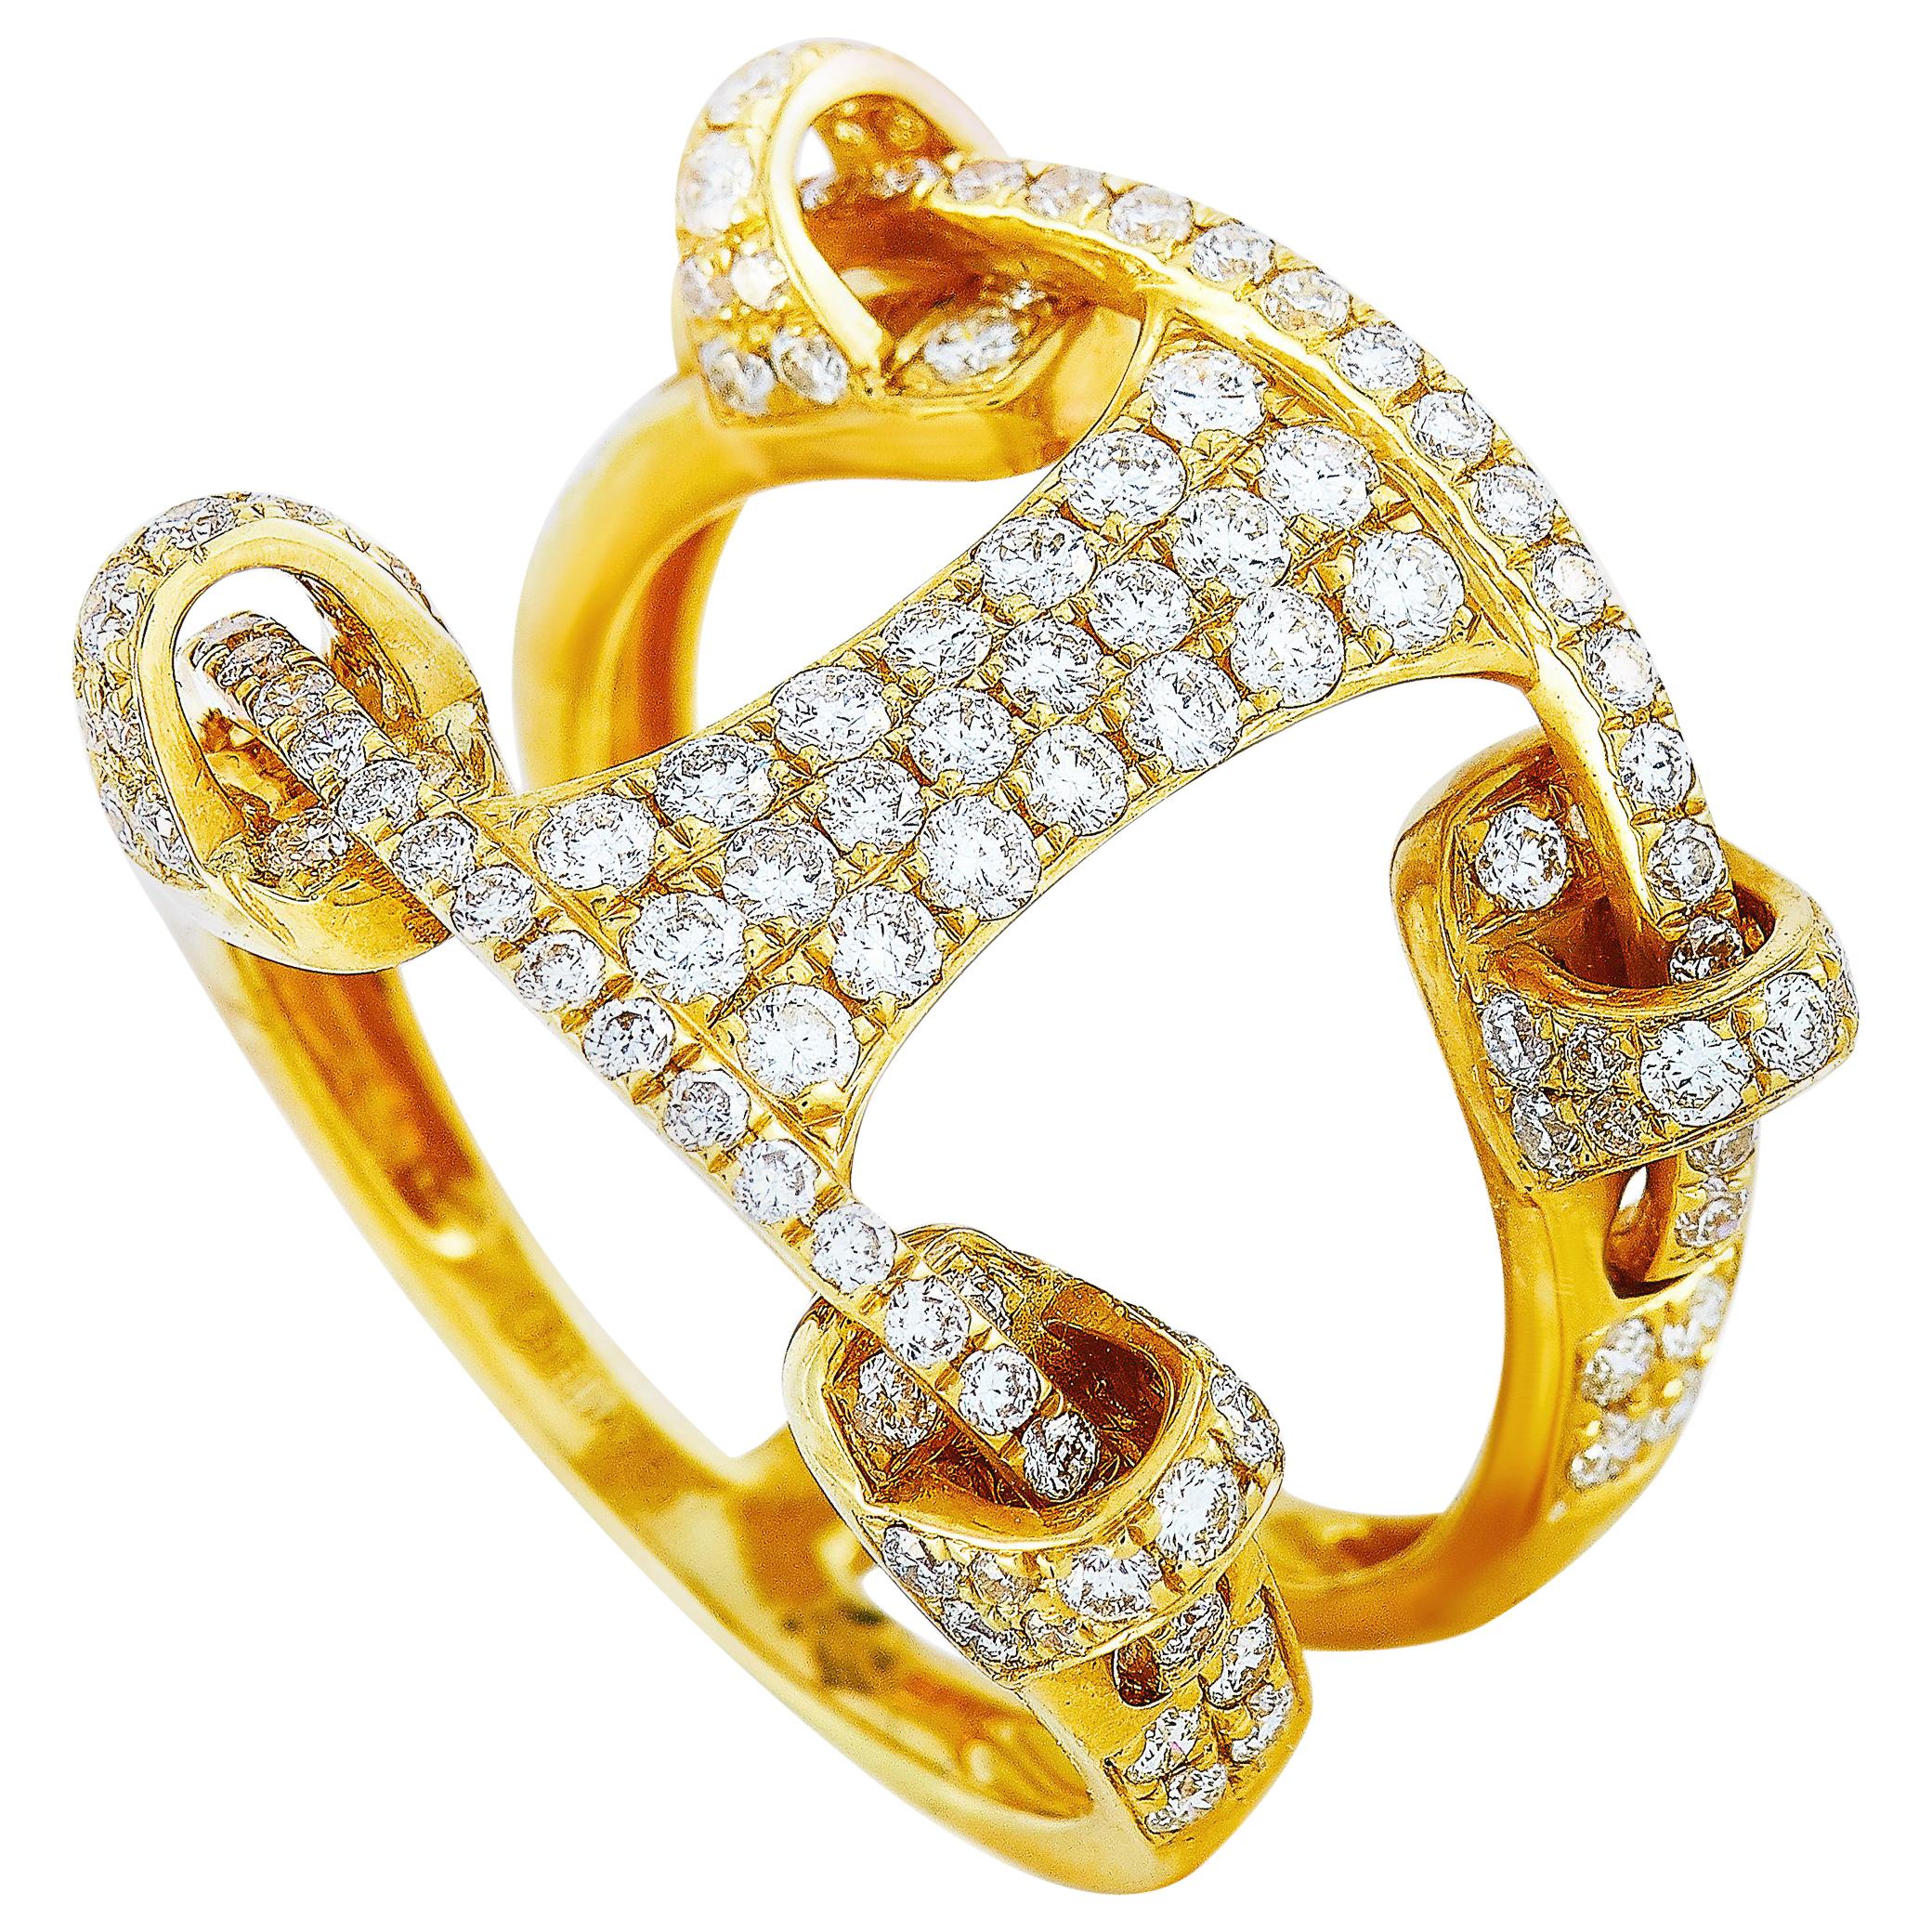 LB Exclusive 18 Karat Gold 1.33 Carat Full Diamond Pave Wide Bridge Band Ring